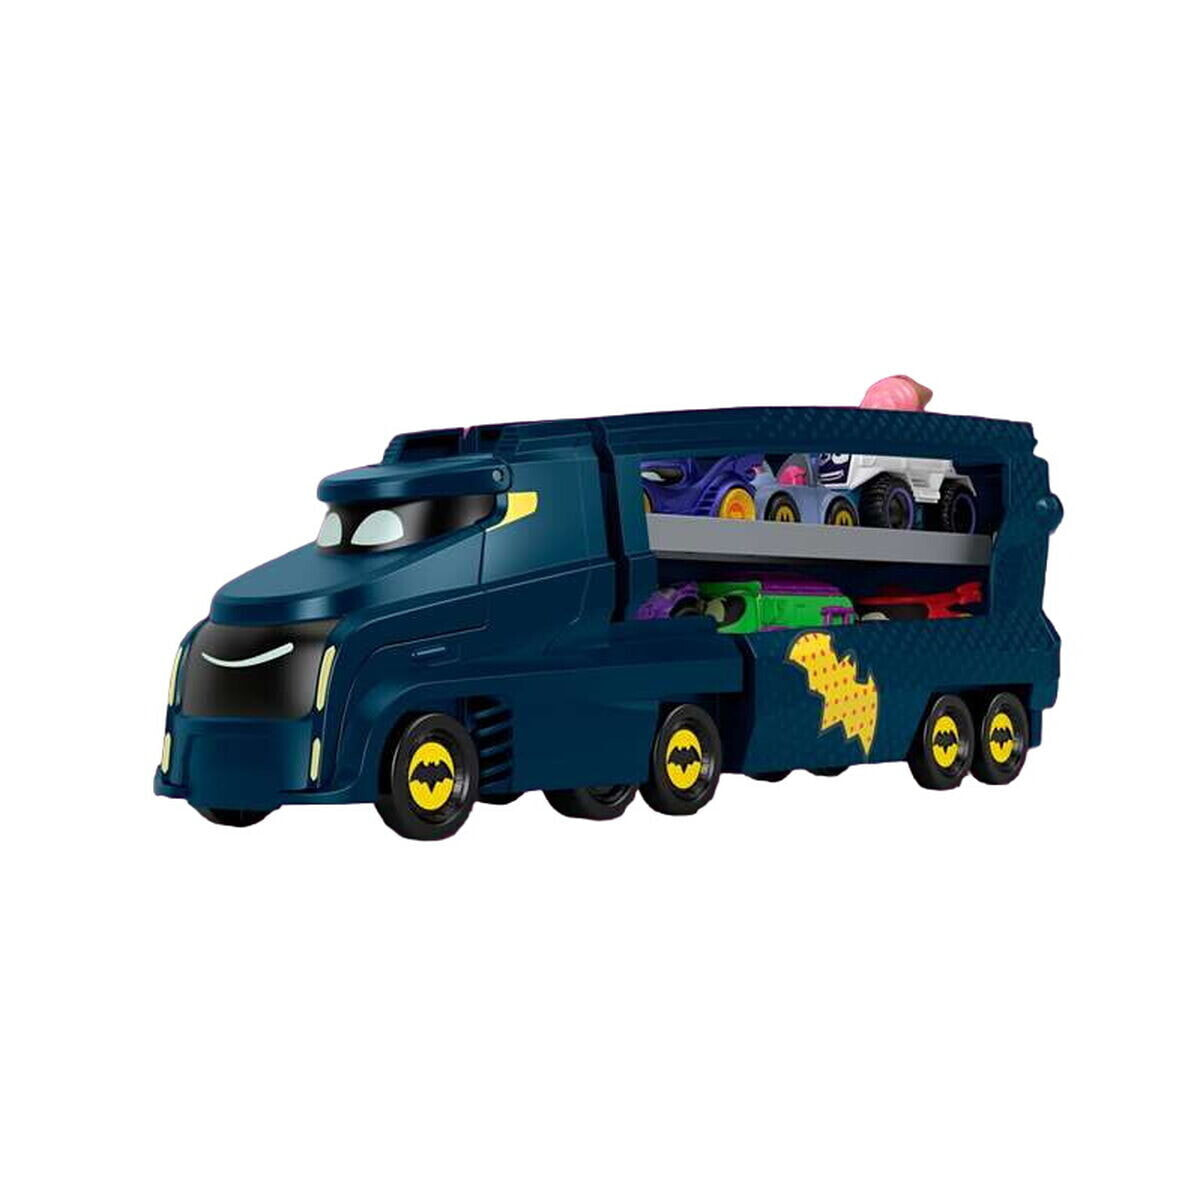 Vehicle Carrier Truck Mattel Batwheels Big Big Bam